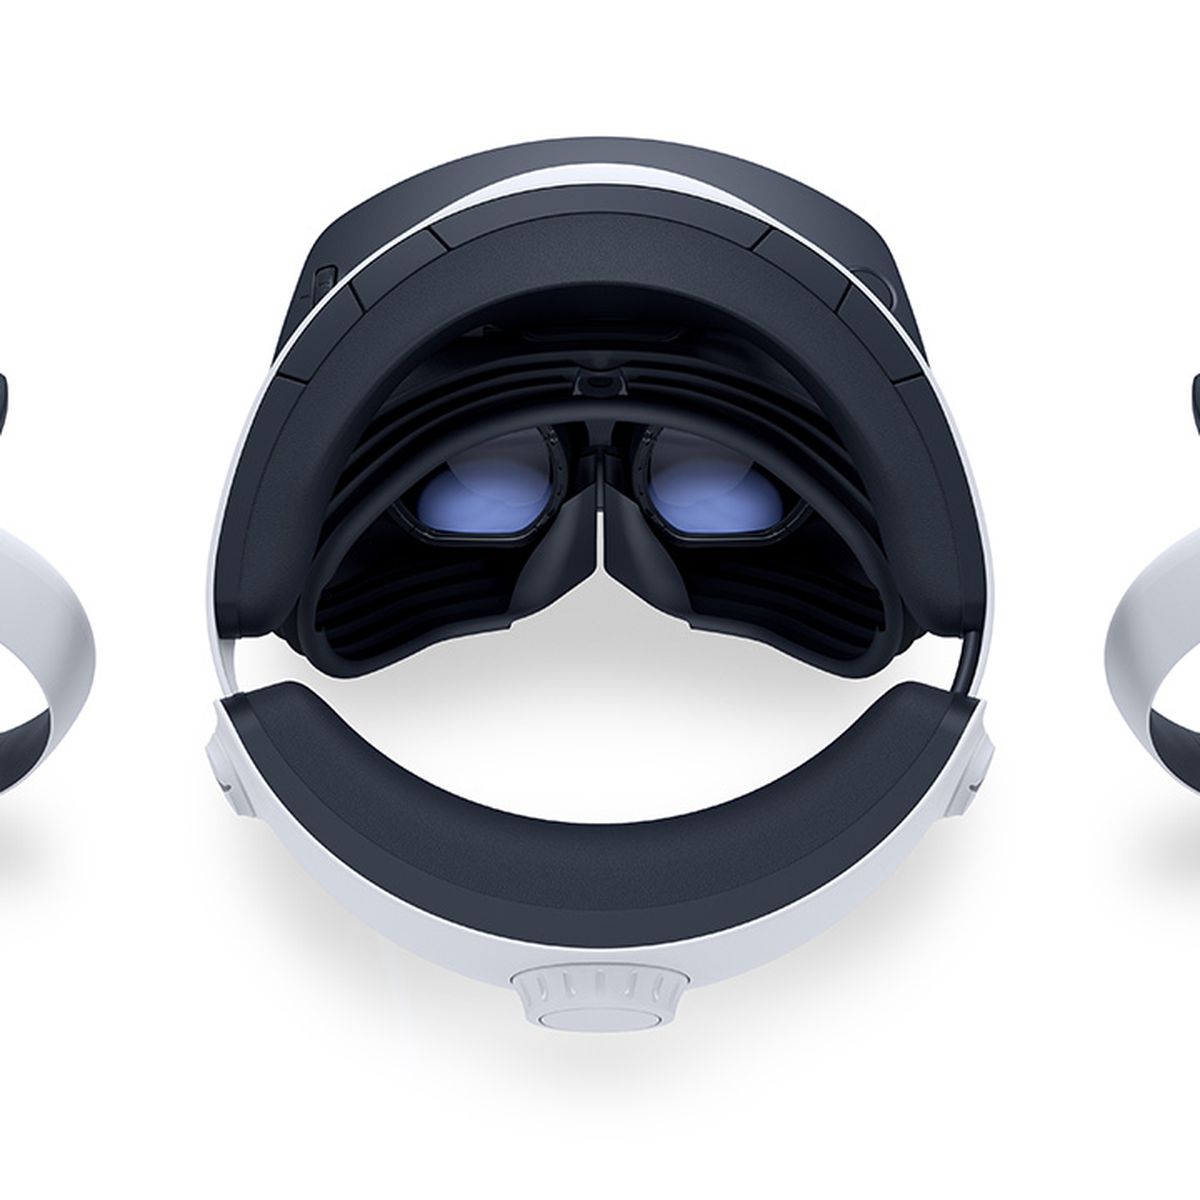 Il visore PSVR 2, visto dall'alto, appoggiato su una superficie bianca, affiancato da entrambi i controller VR2 Sense